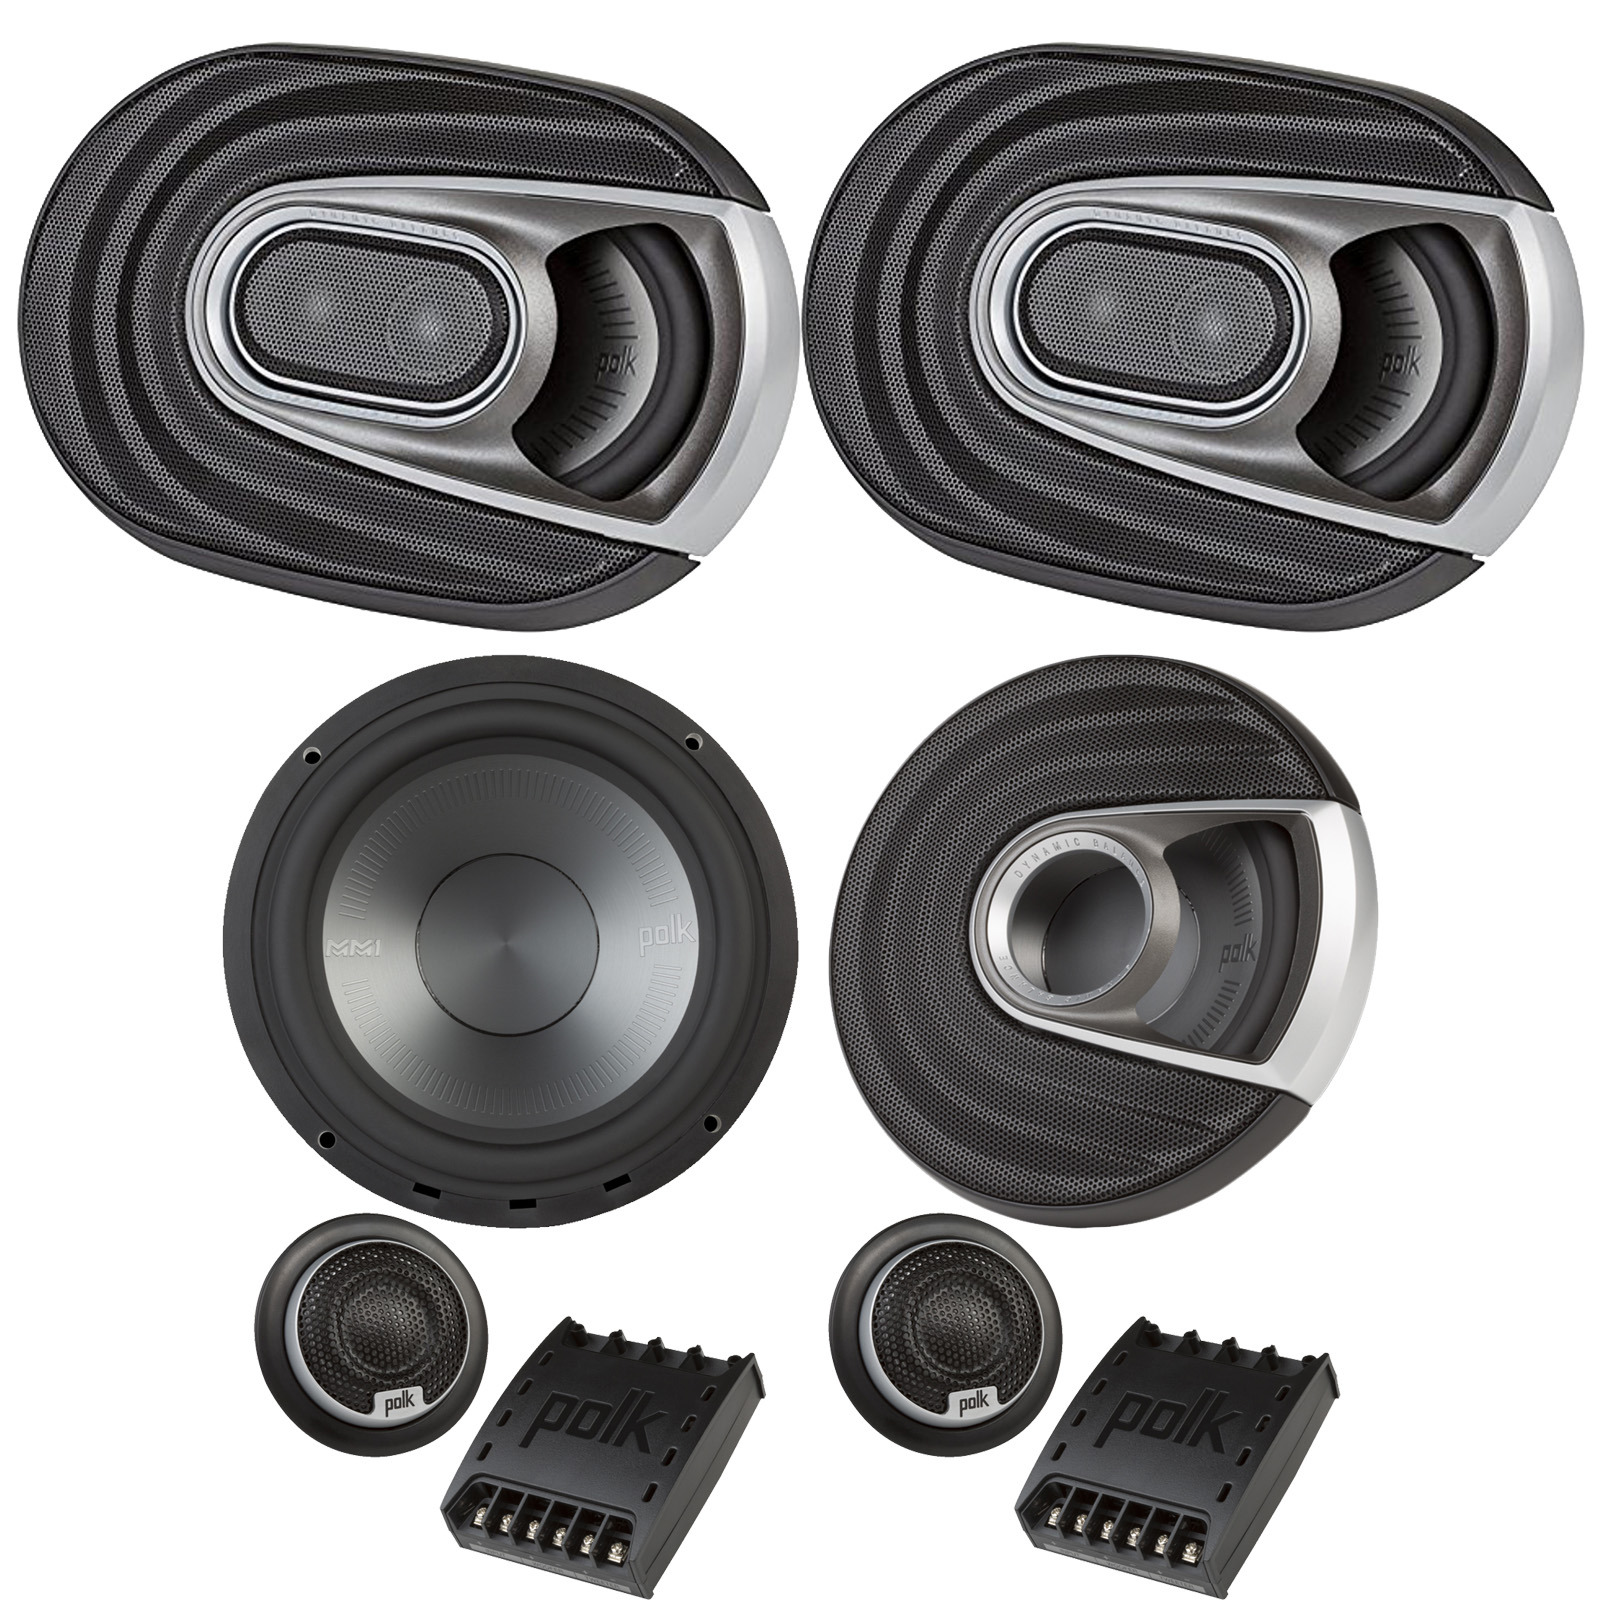 Boat Coaxial Speakers 2x Polk Audio MM Series Marine Certified 6.5” 2 Way Car